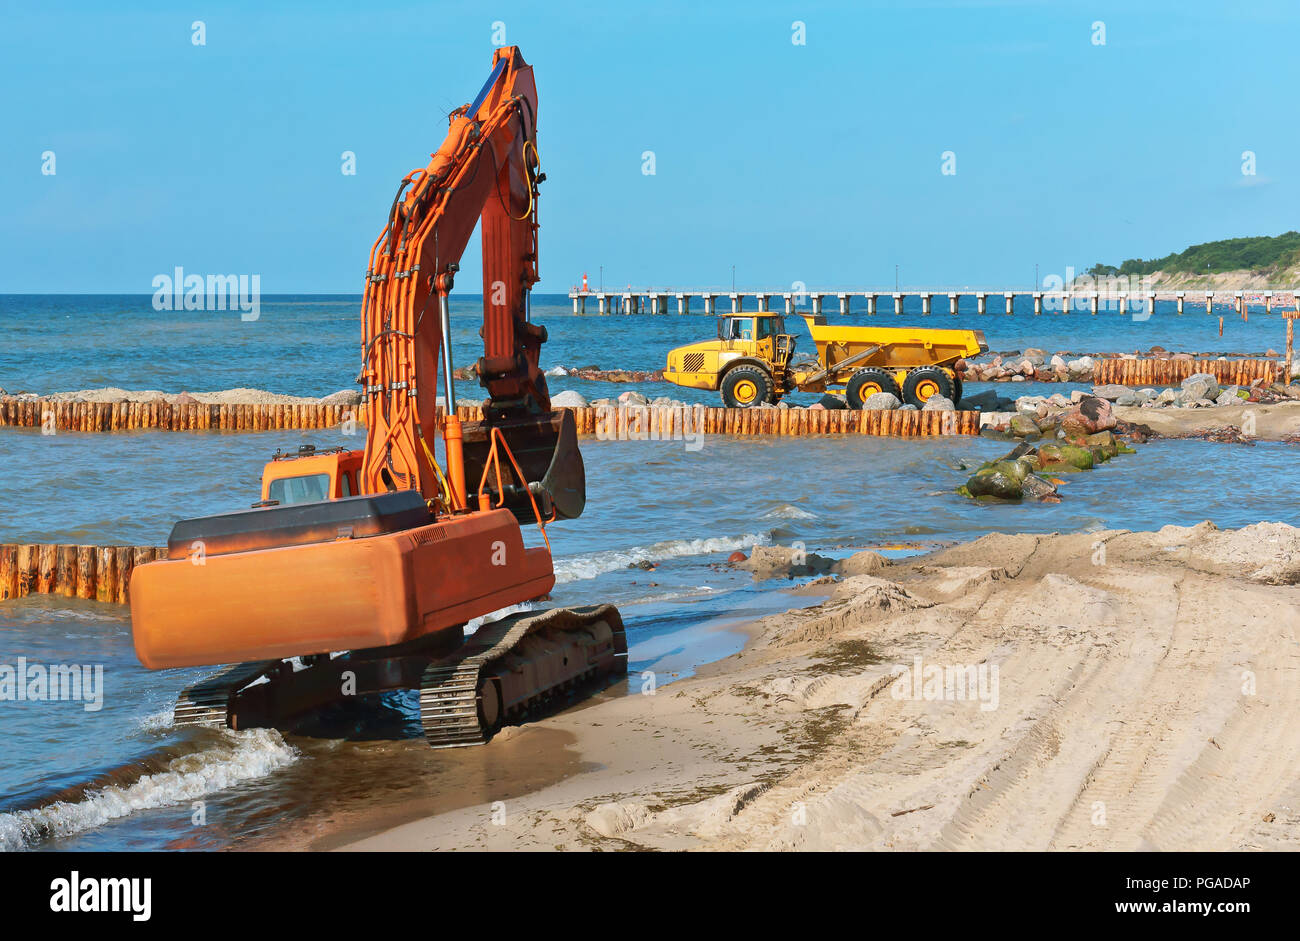 L'équipement de construction sur la rive, la construction de brise-lames, des mesures de protection du littoral Banque D'Images